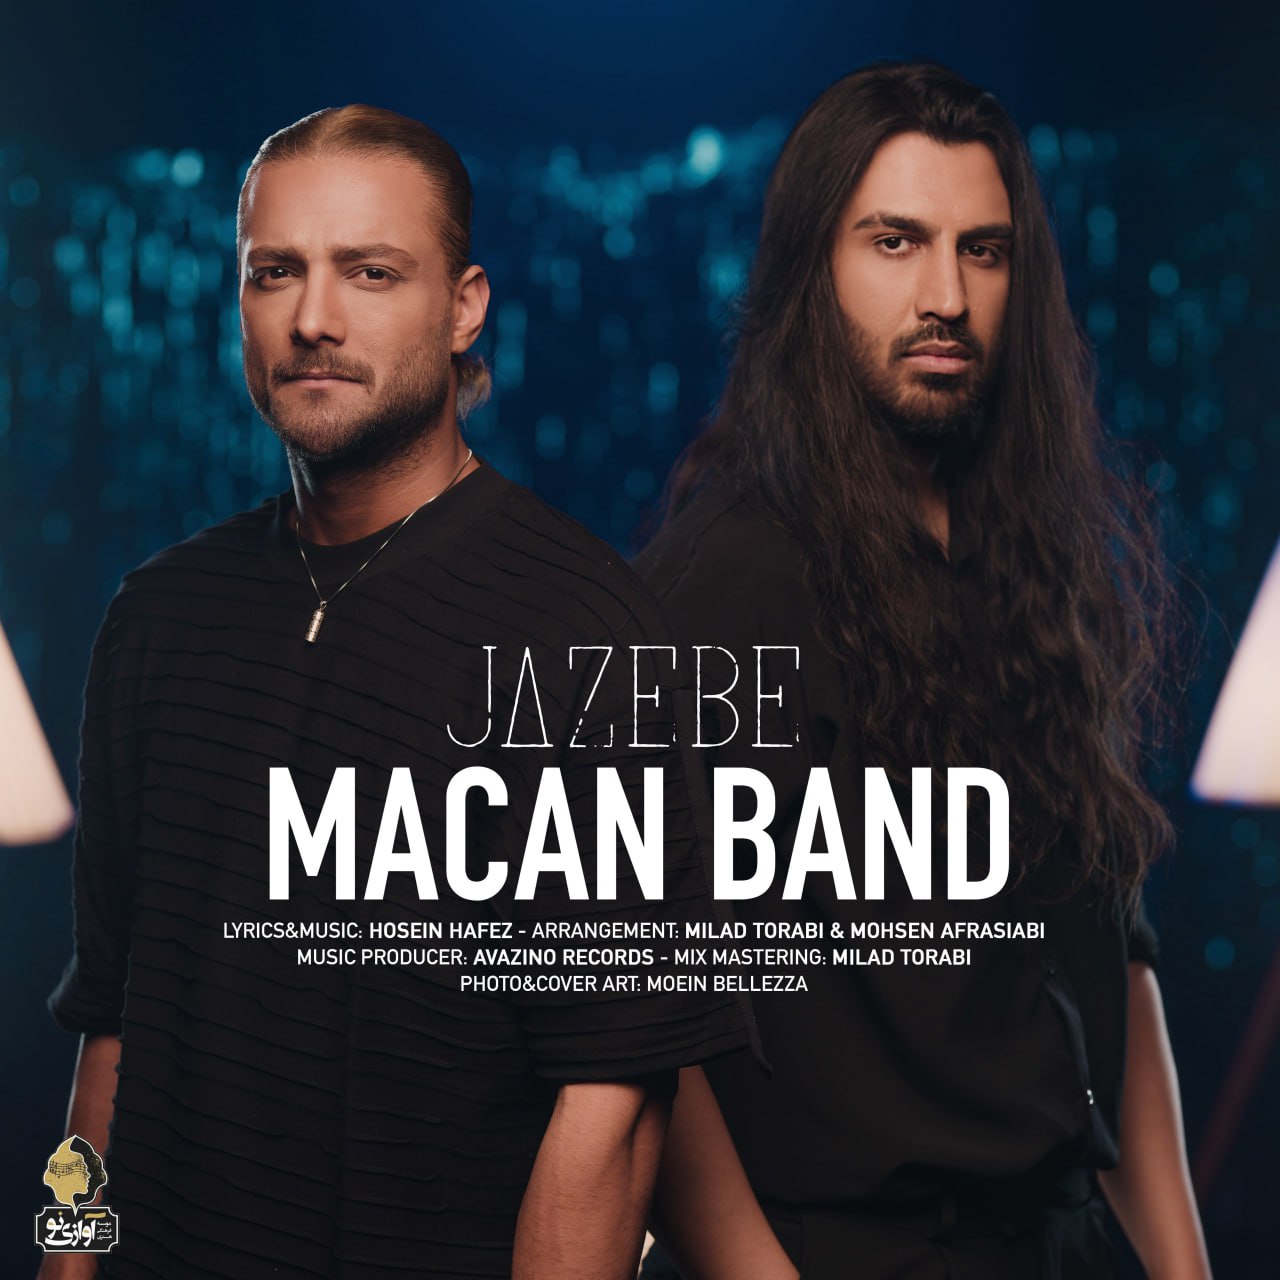 Macan Band – Jazebe